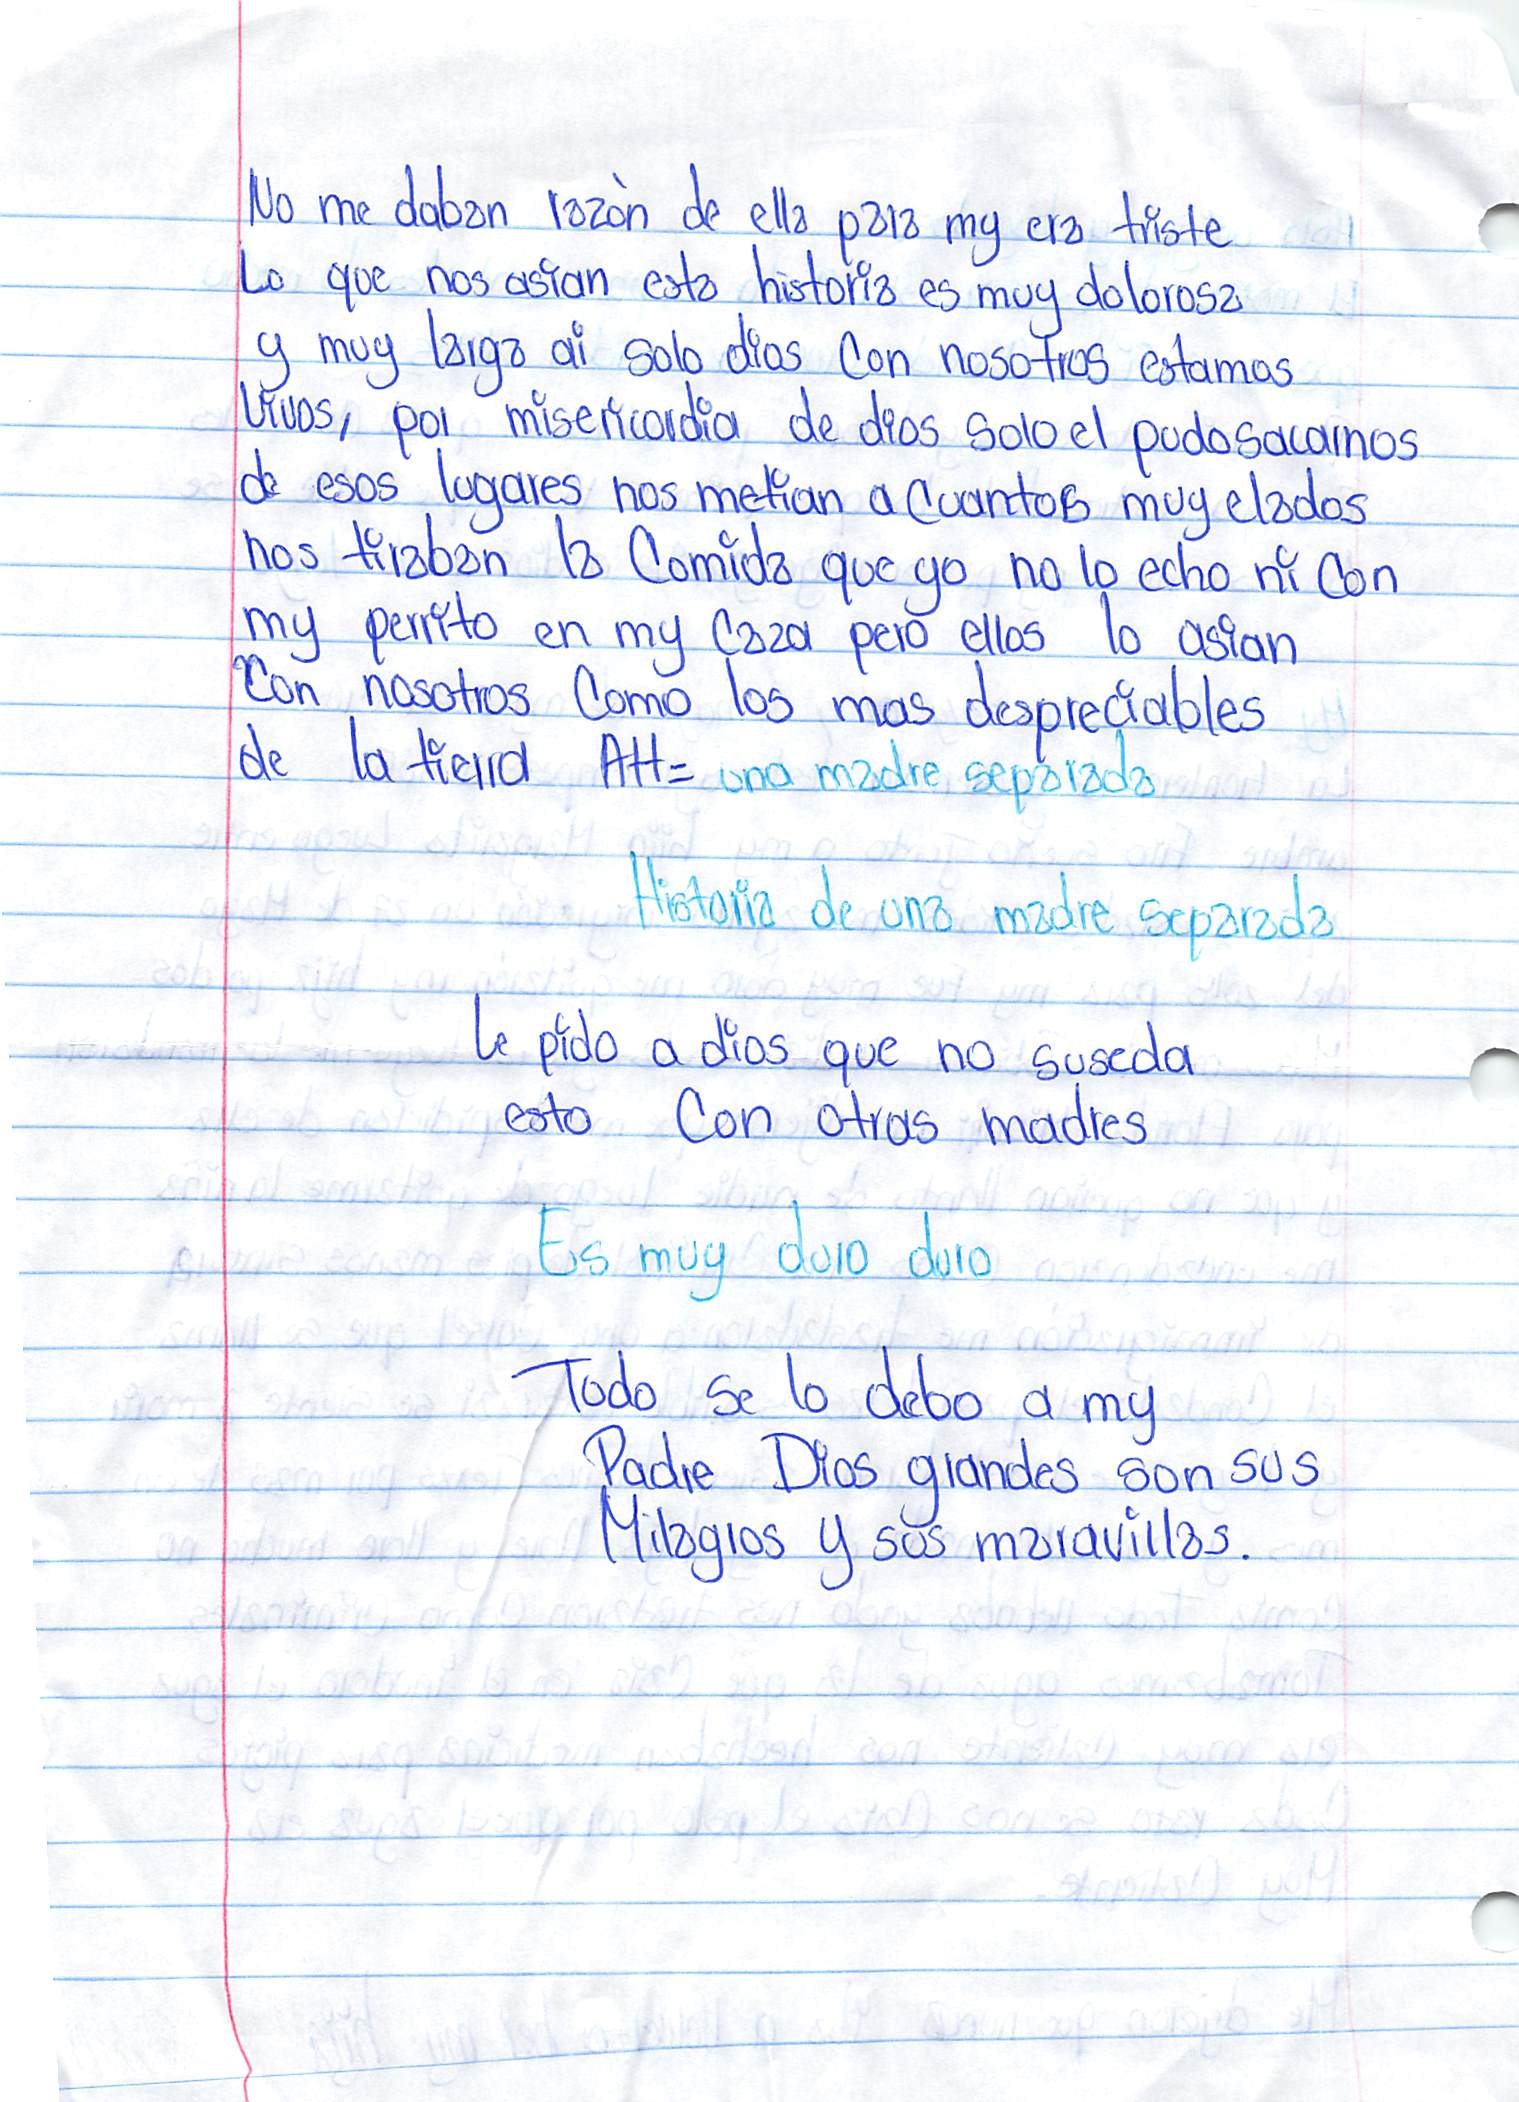 Gabriela's Handwritten Letter Part 2